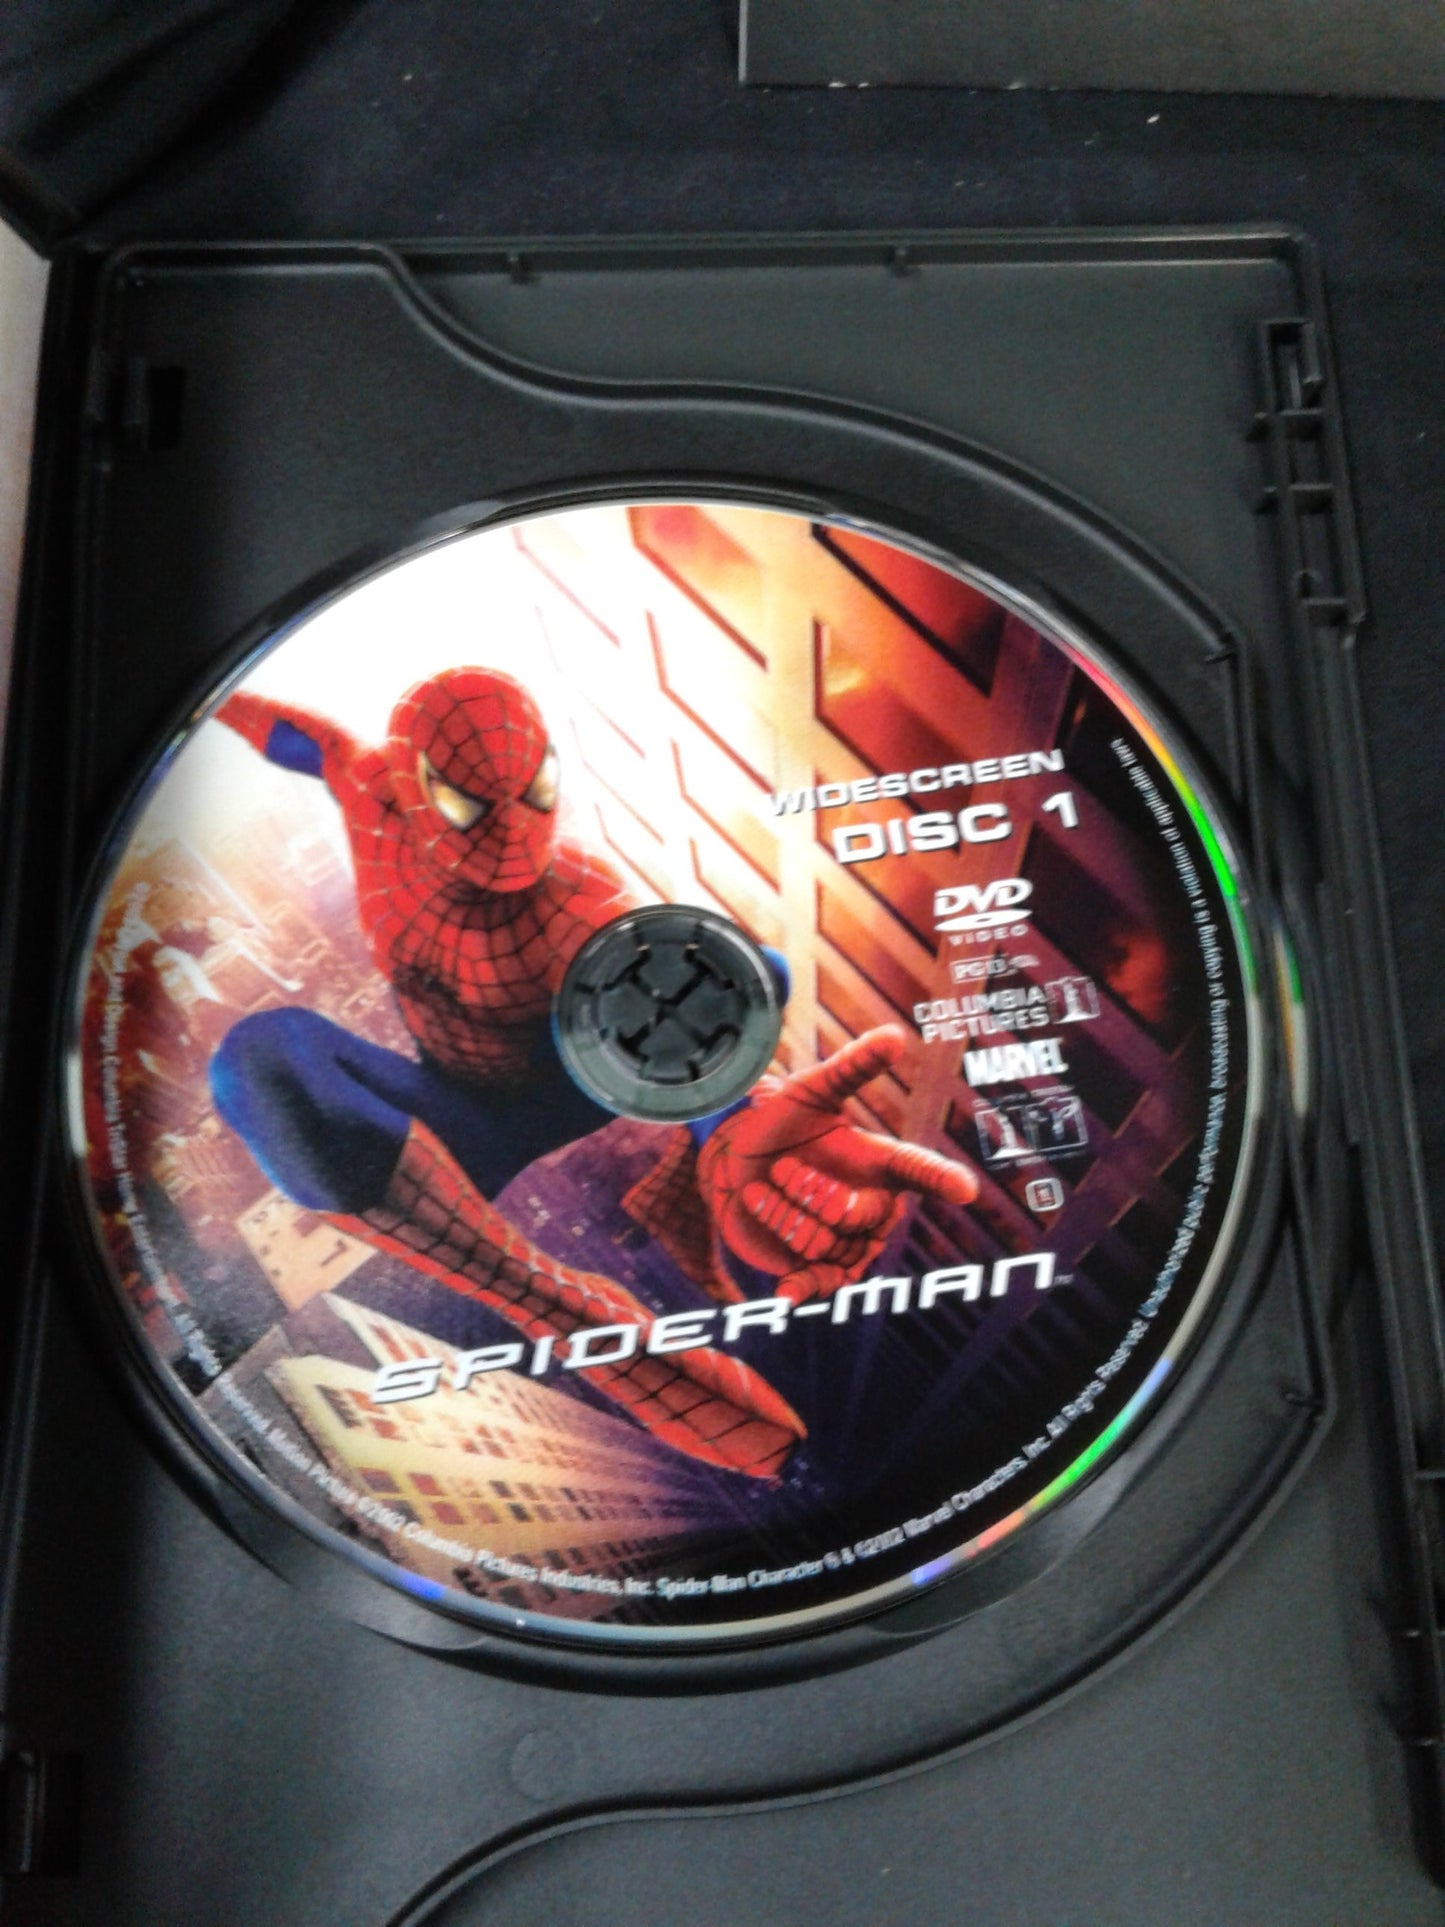 Coffret édition limitée Spider-man